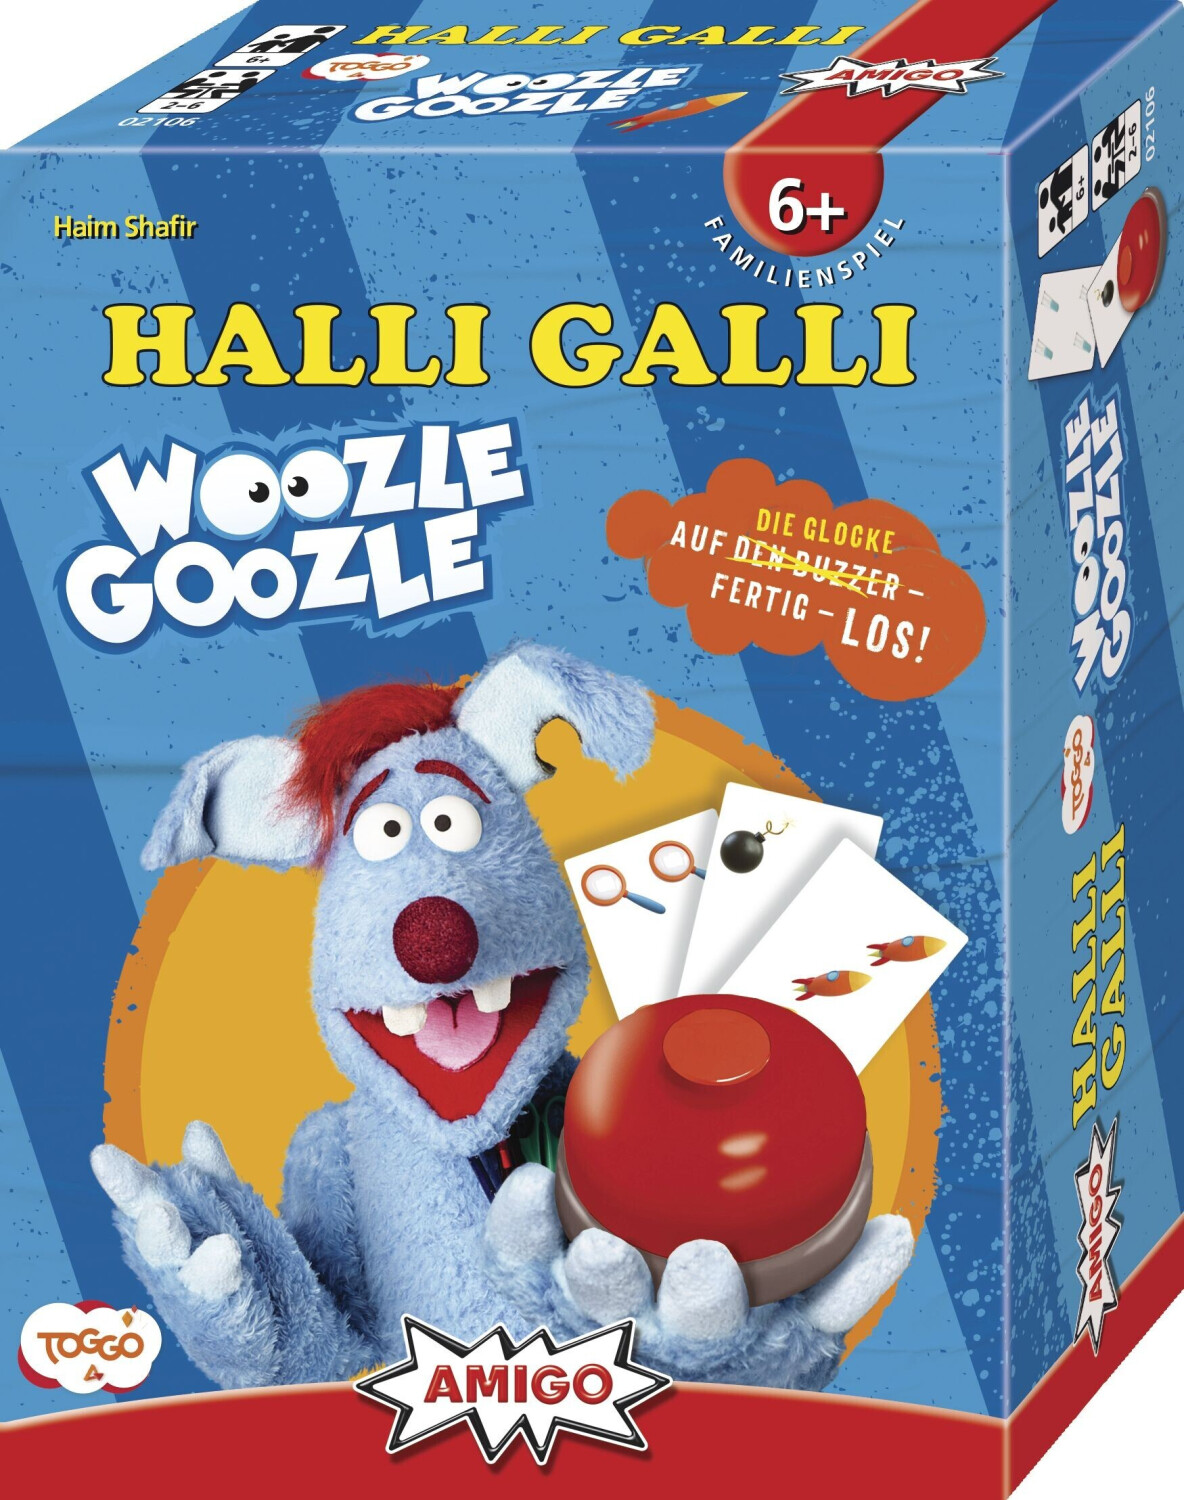 Halli Galli Woozle Goozle (02106) ab 13,99 €